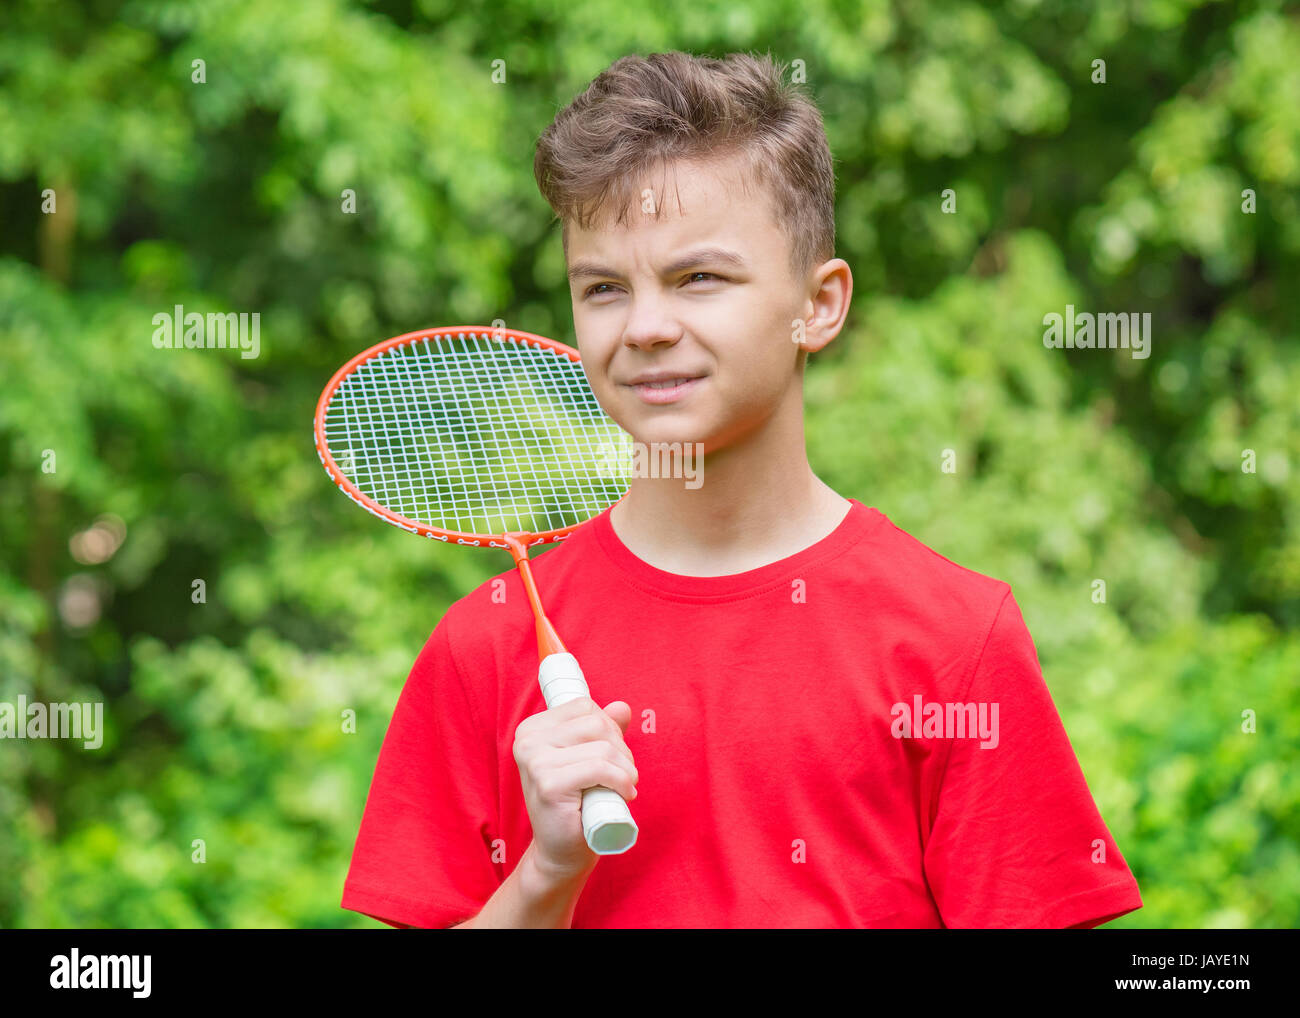 Teen junge Badminton in Wiese mit Wald im Hintergrund spielen. Kind mit Badminton Schläger in der hand. Kinder haben Spaß im Sommerpark am Tag. Stockfoto